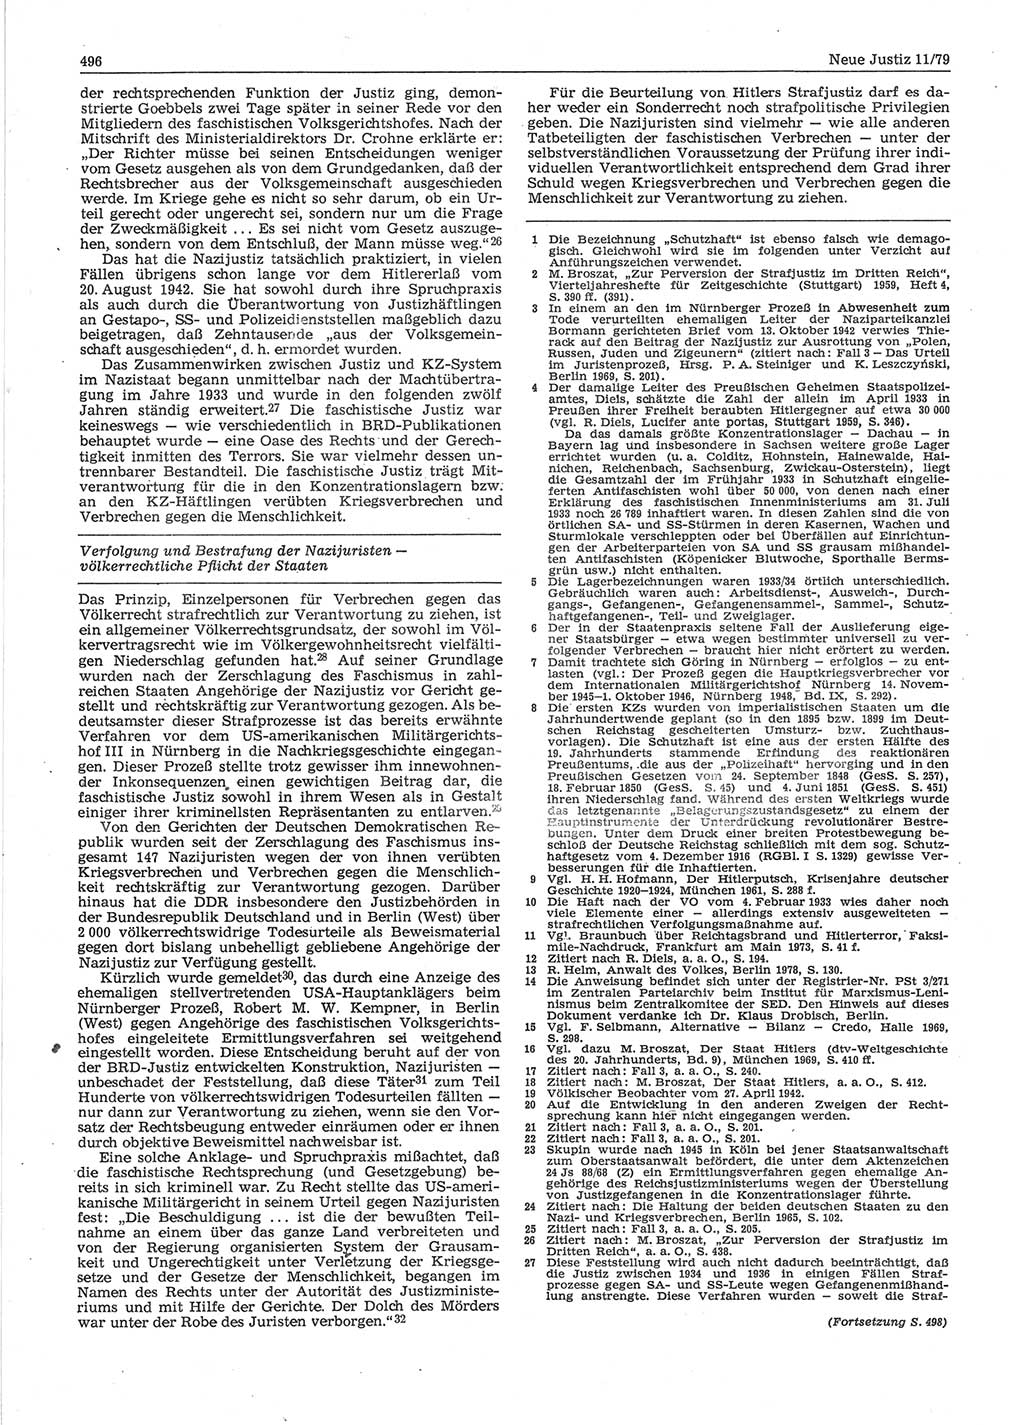 Neue Justiz (NJ), Zeitschrift für sozialistisches Recht und Gesetzlichkeit [Deutsche Demokratische Republik (DDR)], 33. Jahrgang 1979, Seite 496 (NJ DDR 1979, S. 496)